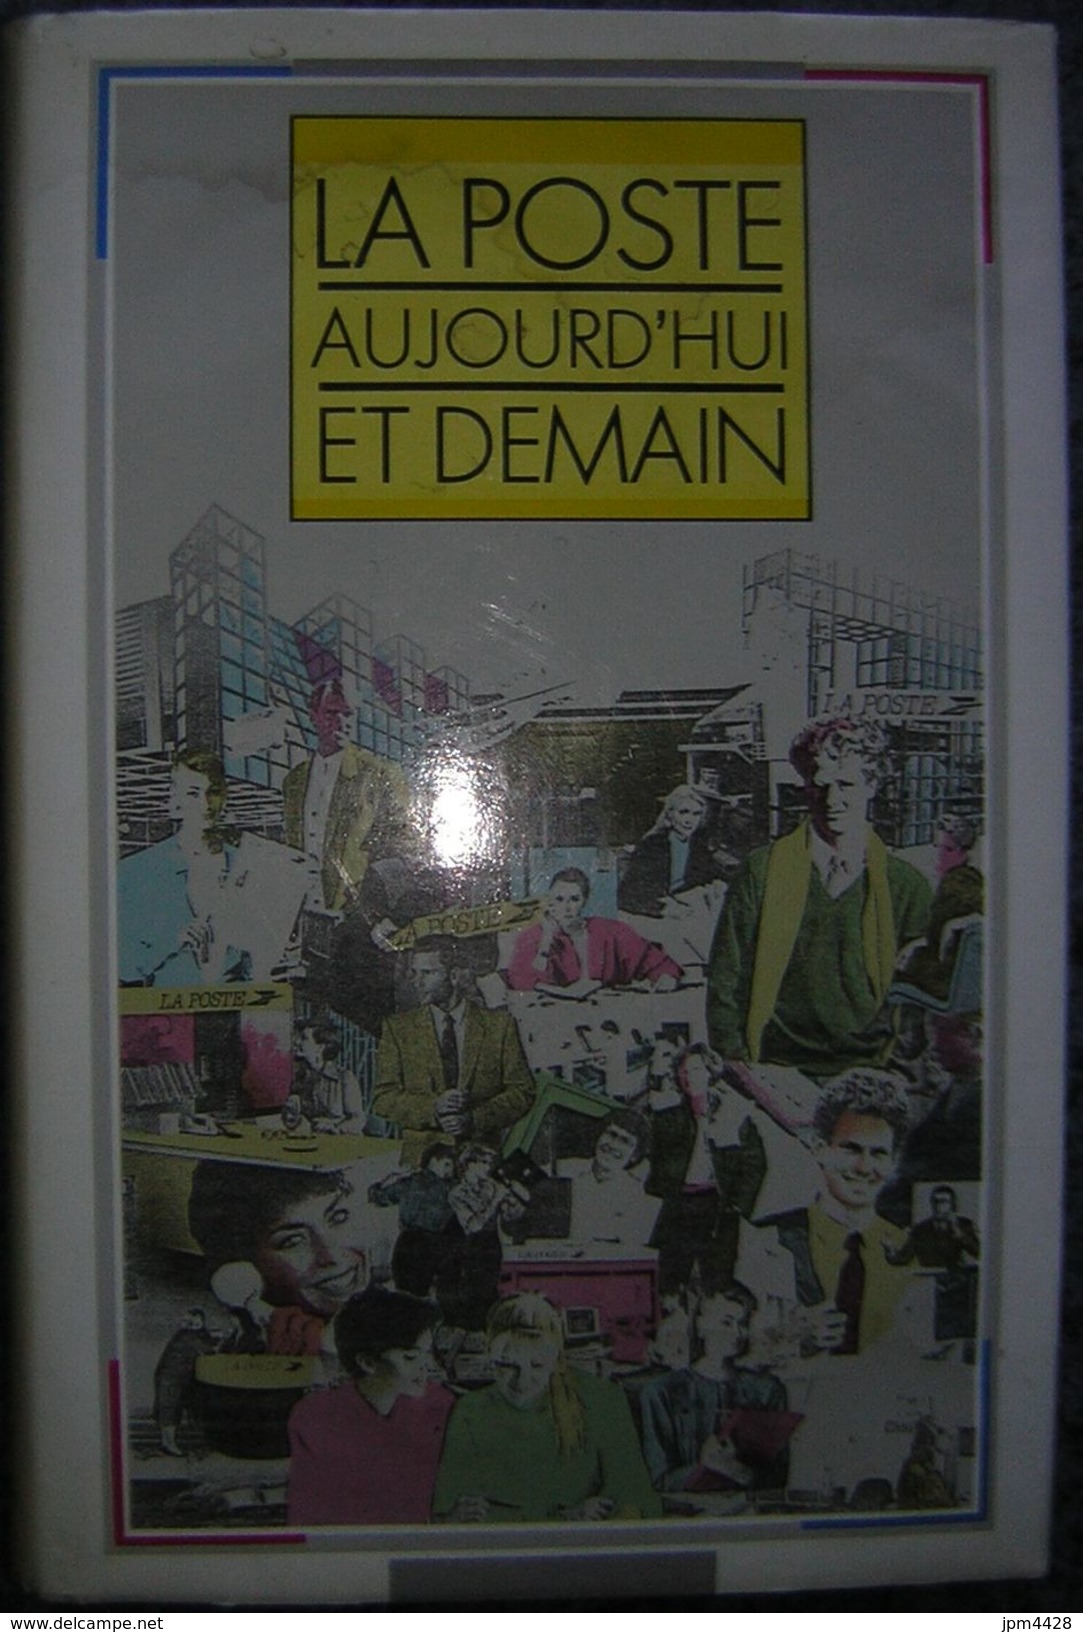 La Poste Aujouird'hui Et Demain Livre De 1989, 222 Pages - Ministére Des Postes, Des Télécomminications Et De L'espace - Manuali